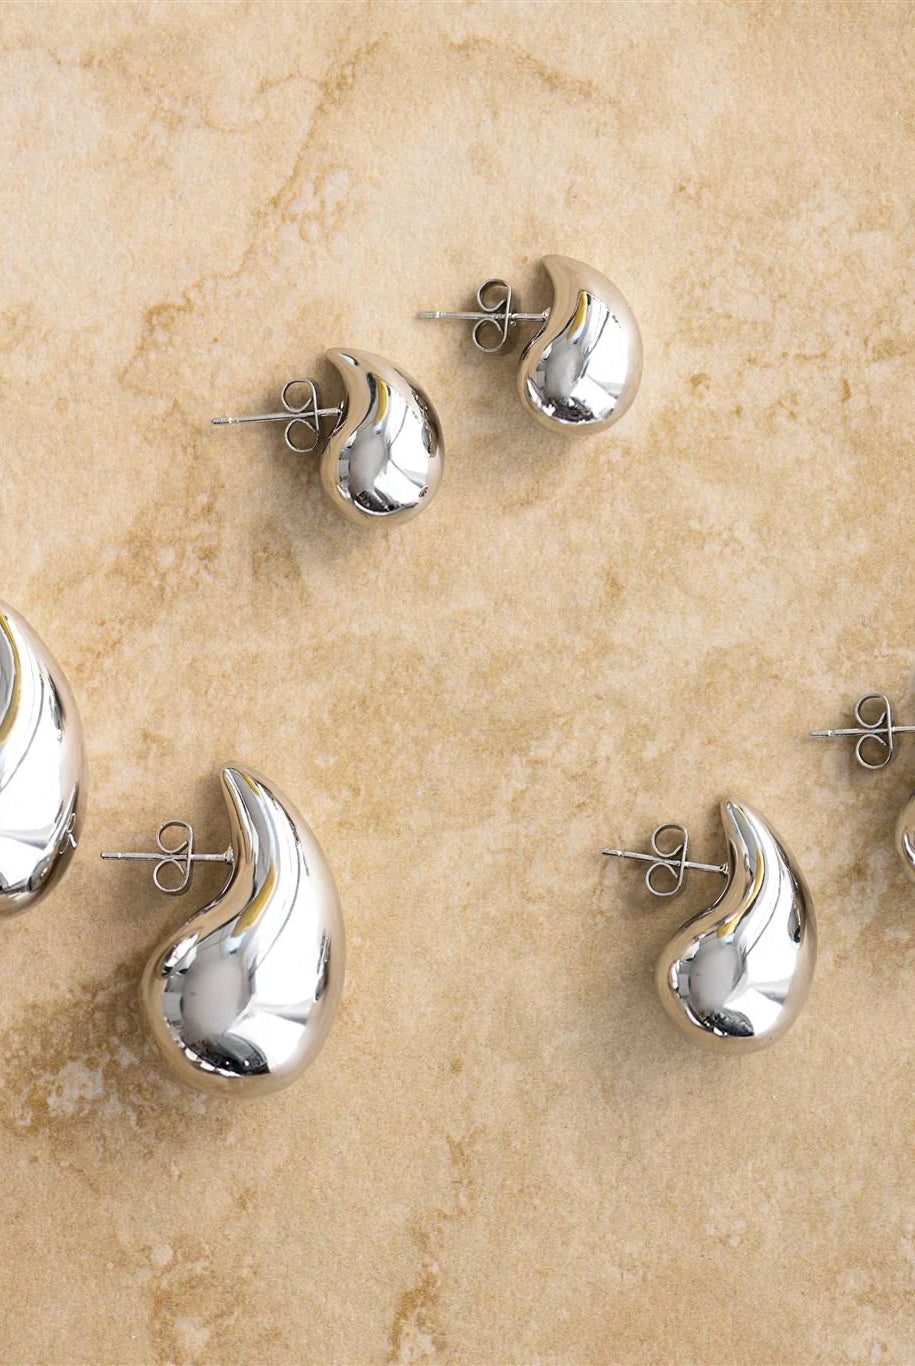 Sophia Teardrop earrings in the three sizes